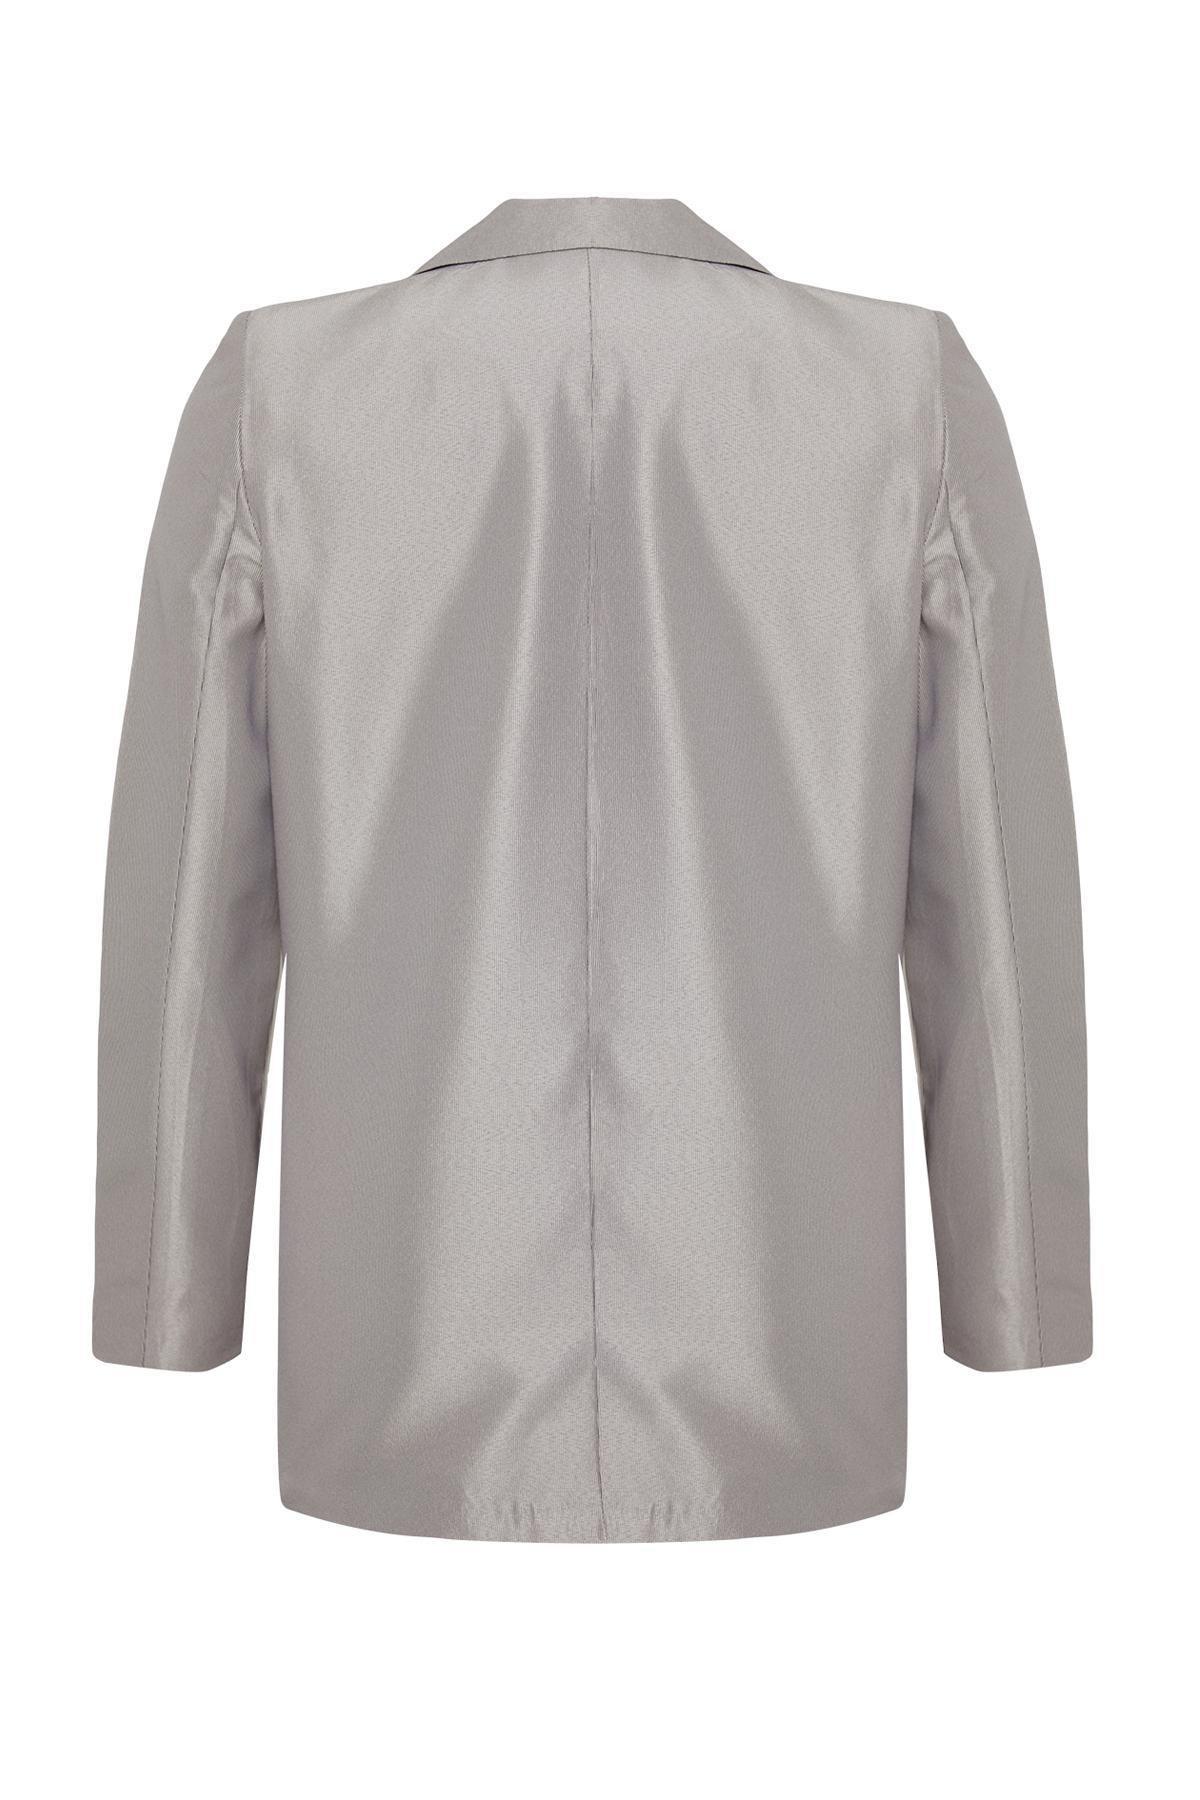 Trendyol - Beige Buttoned Woven Blazer Jacket